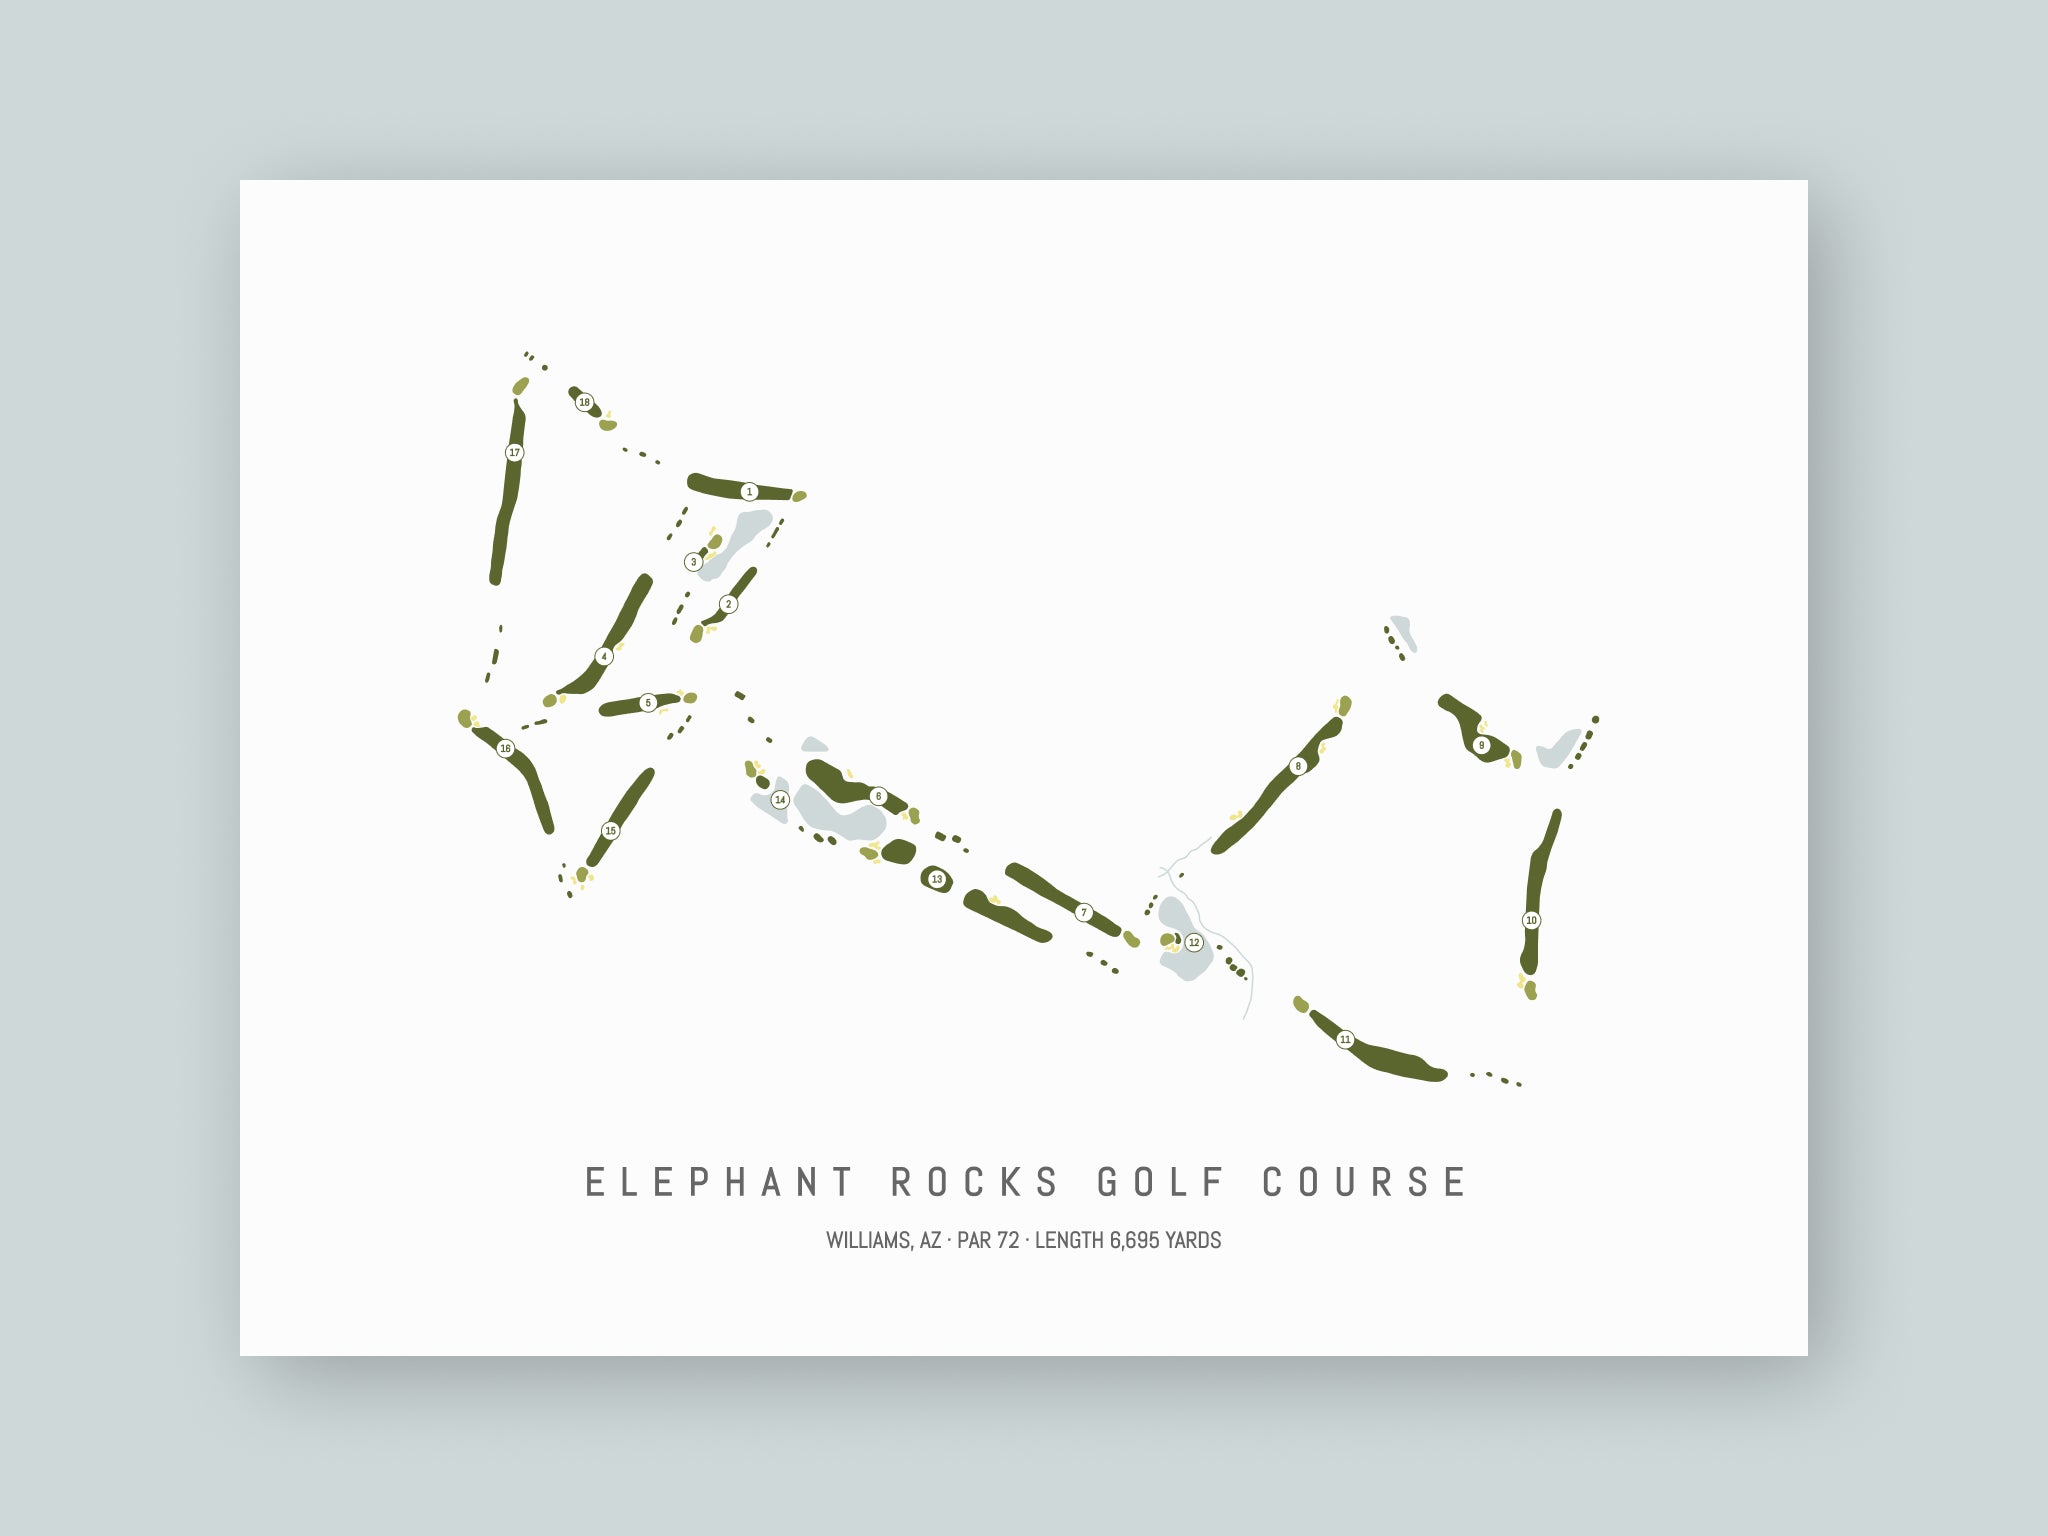 Elephant-Rocks-Golf-Course-AZ--Unframed-24x18-With-Hole-Numbers